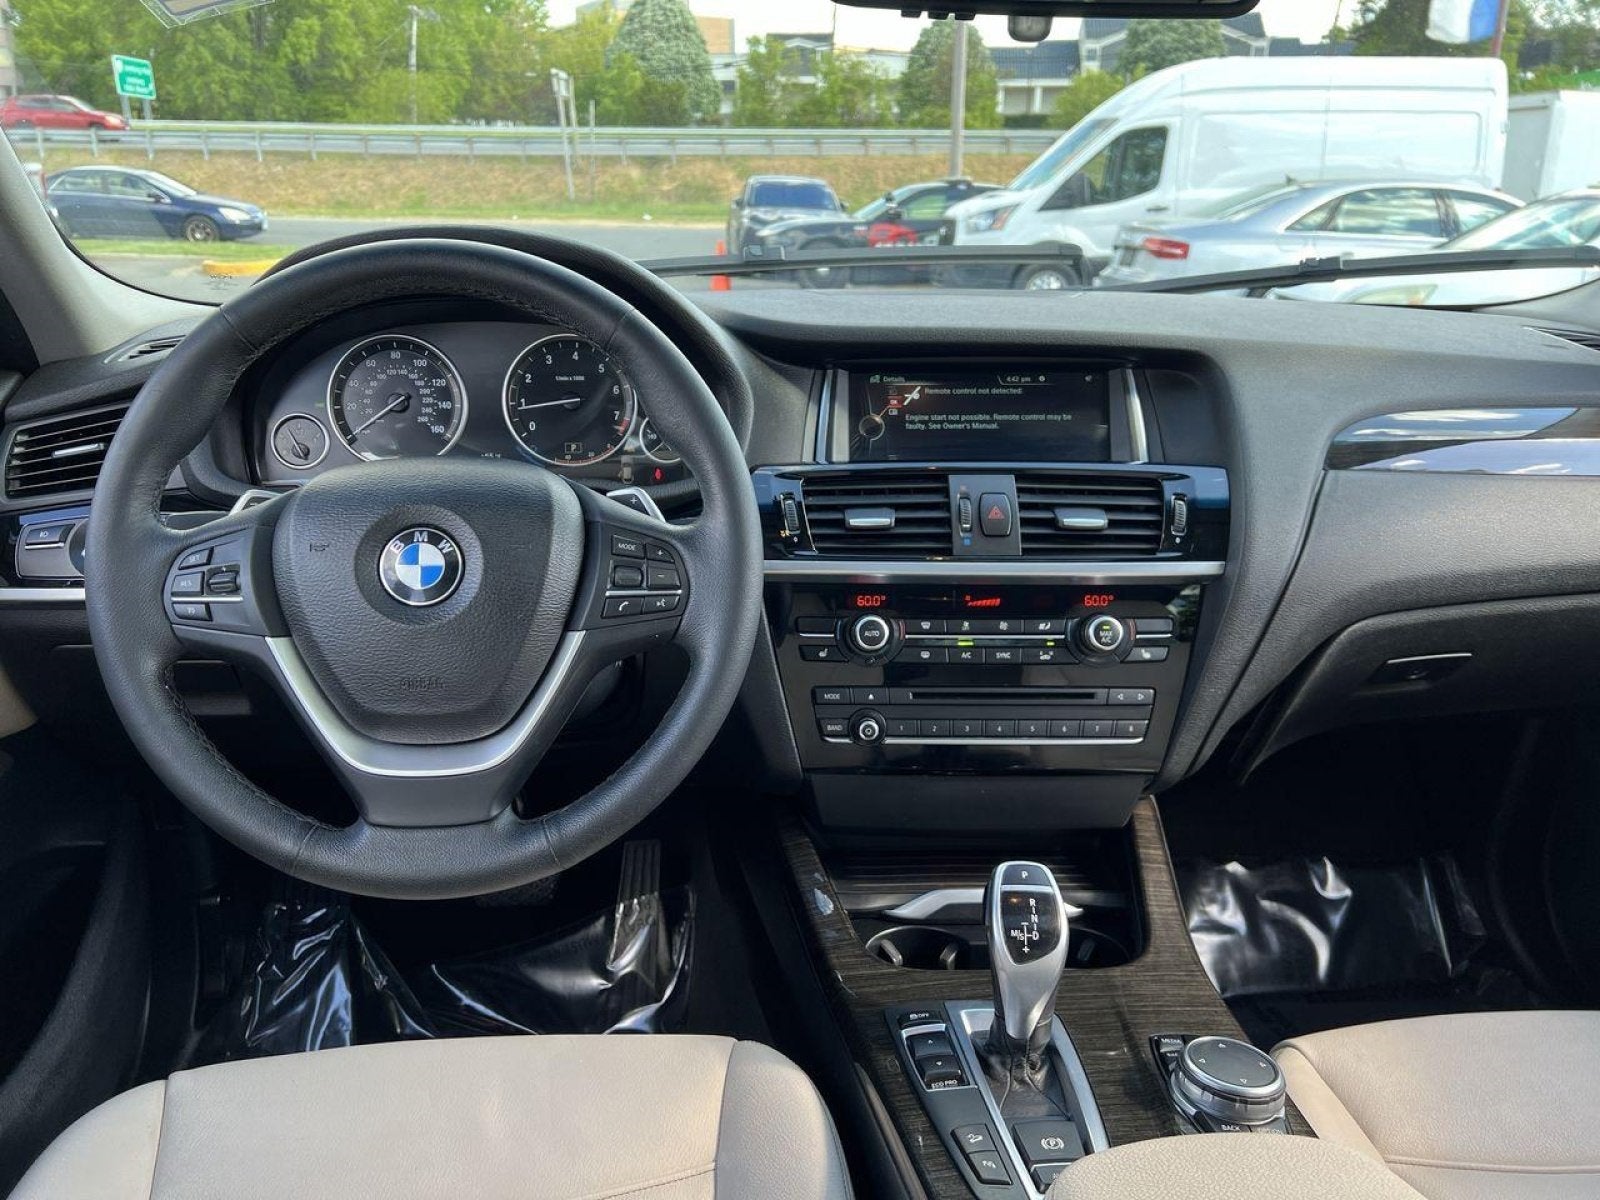 2015 BMW X4 xDrive28i